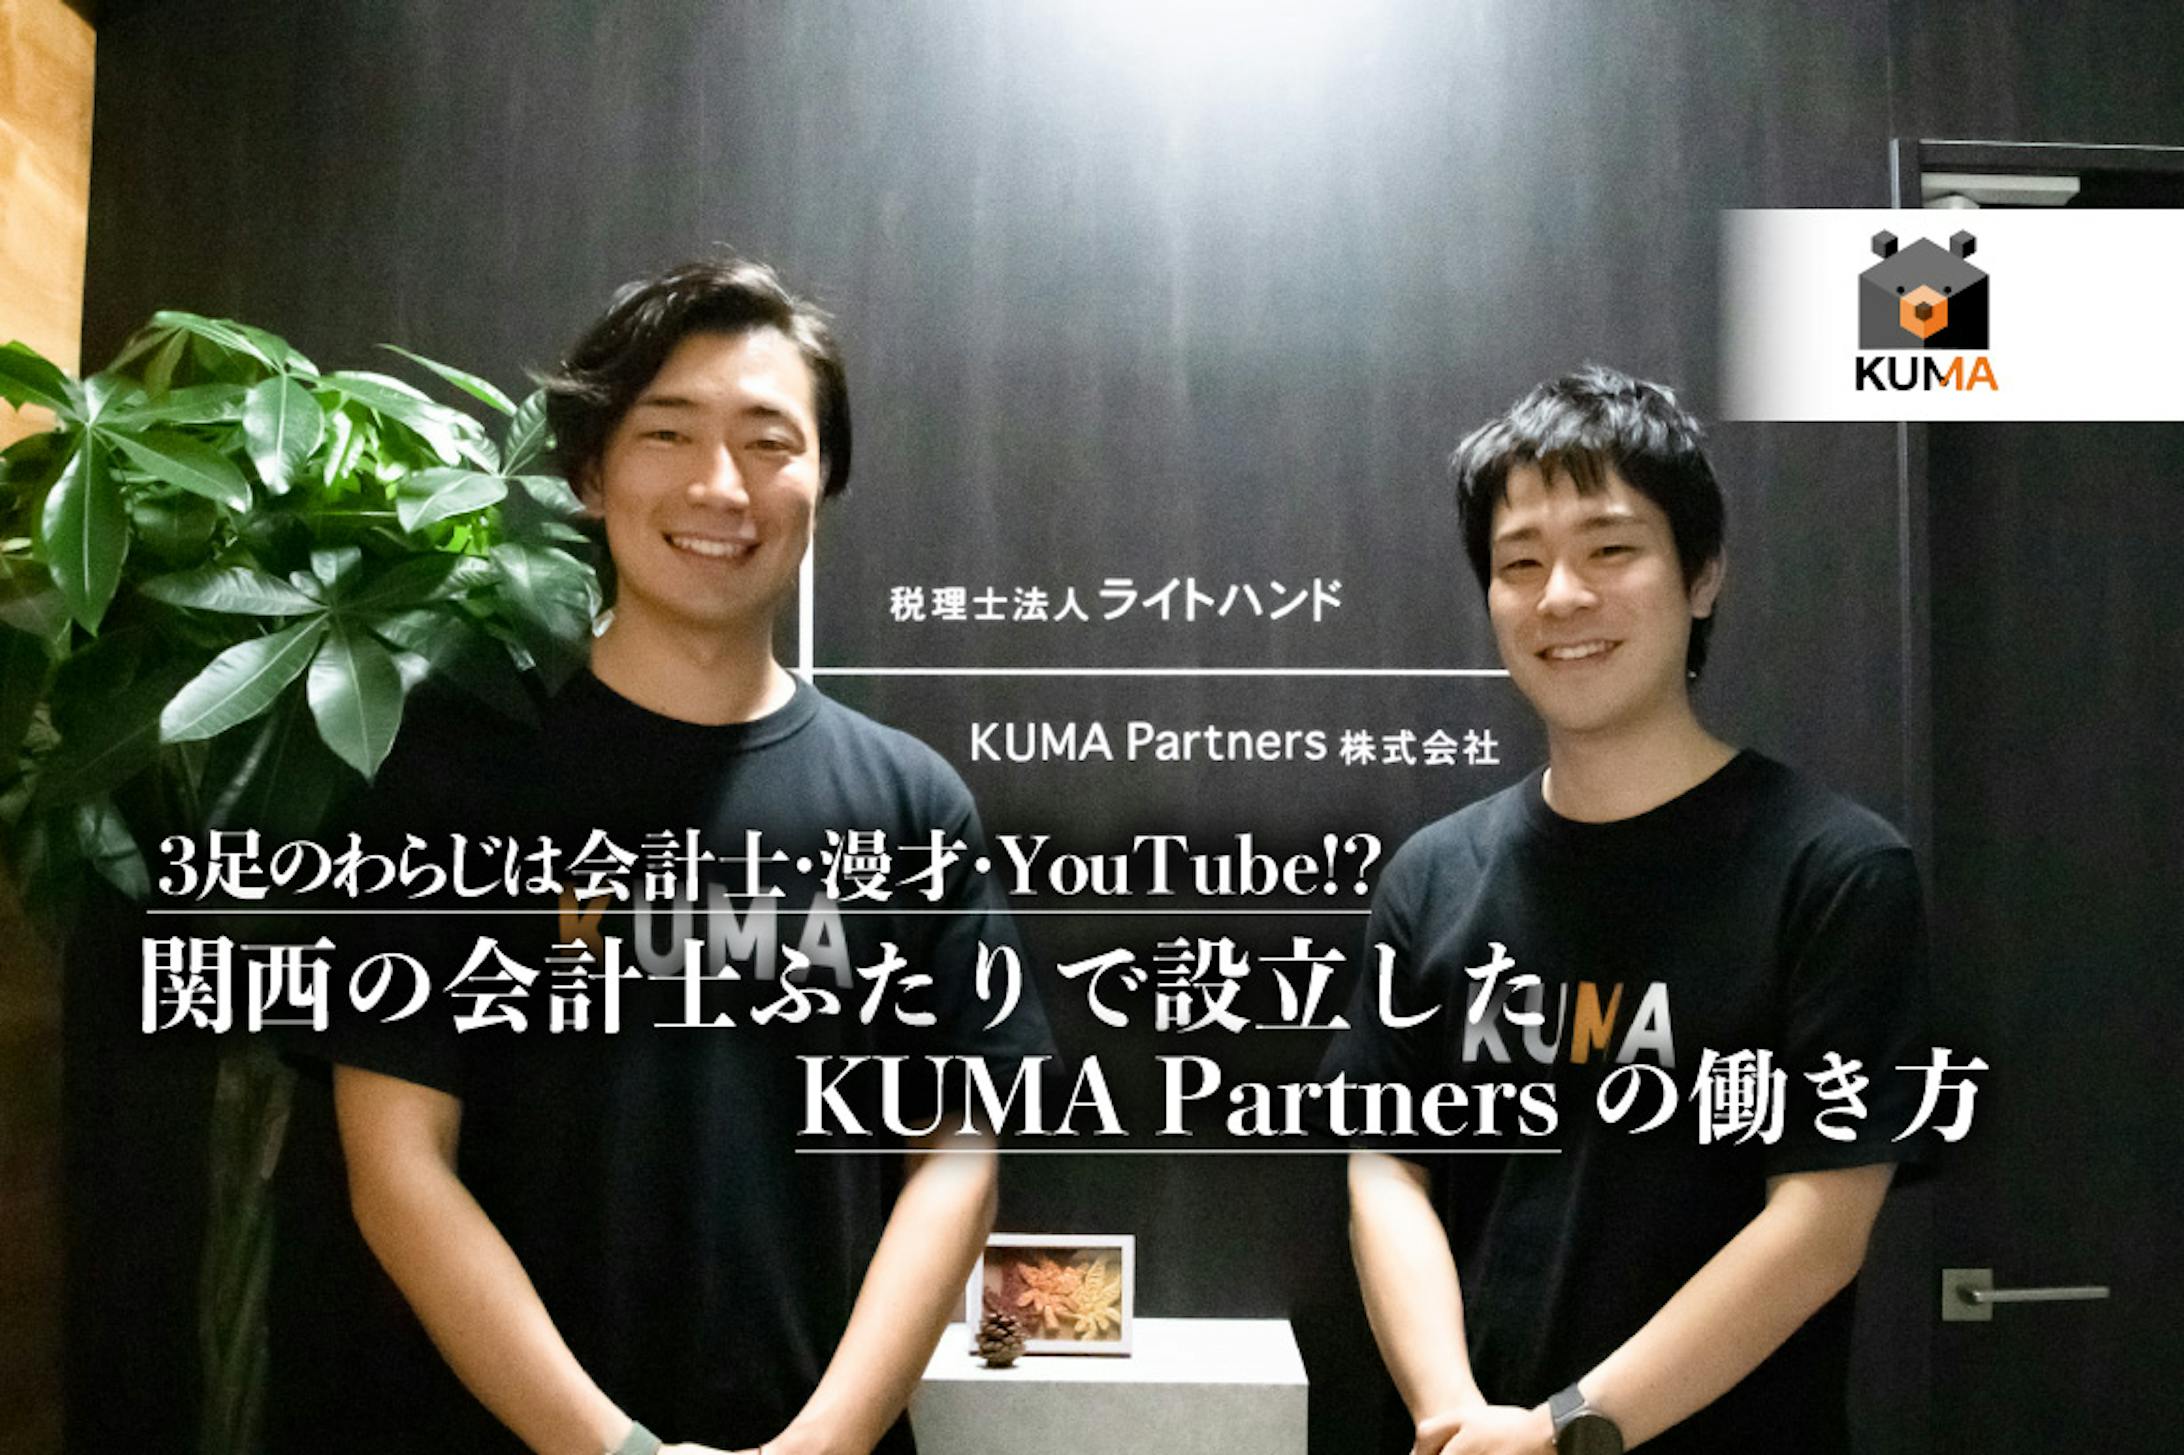 【公認会計士ナビ】3足のわらじは会計士・漫才・YouTube!? 関西の会計士ふたりで設立したKUMA Partnersの働き方-1